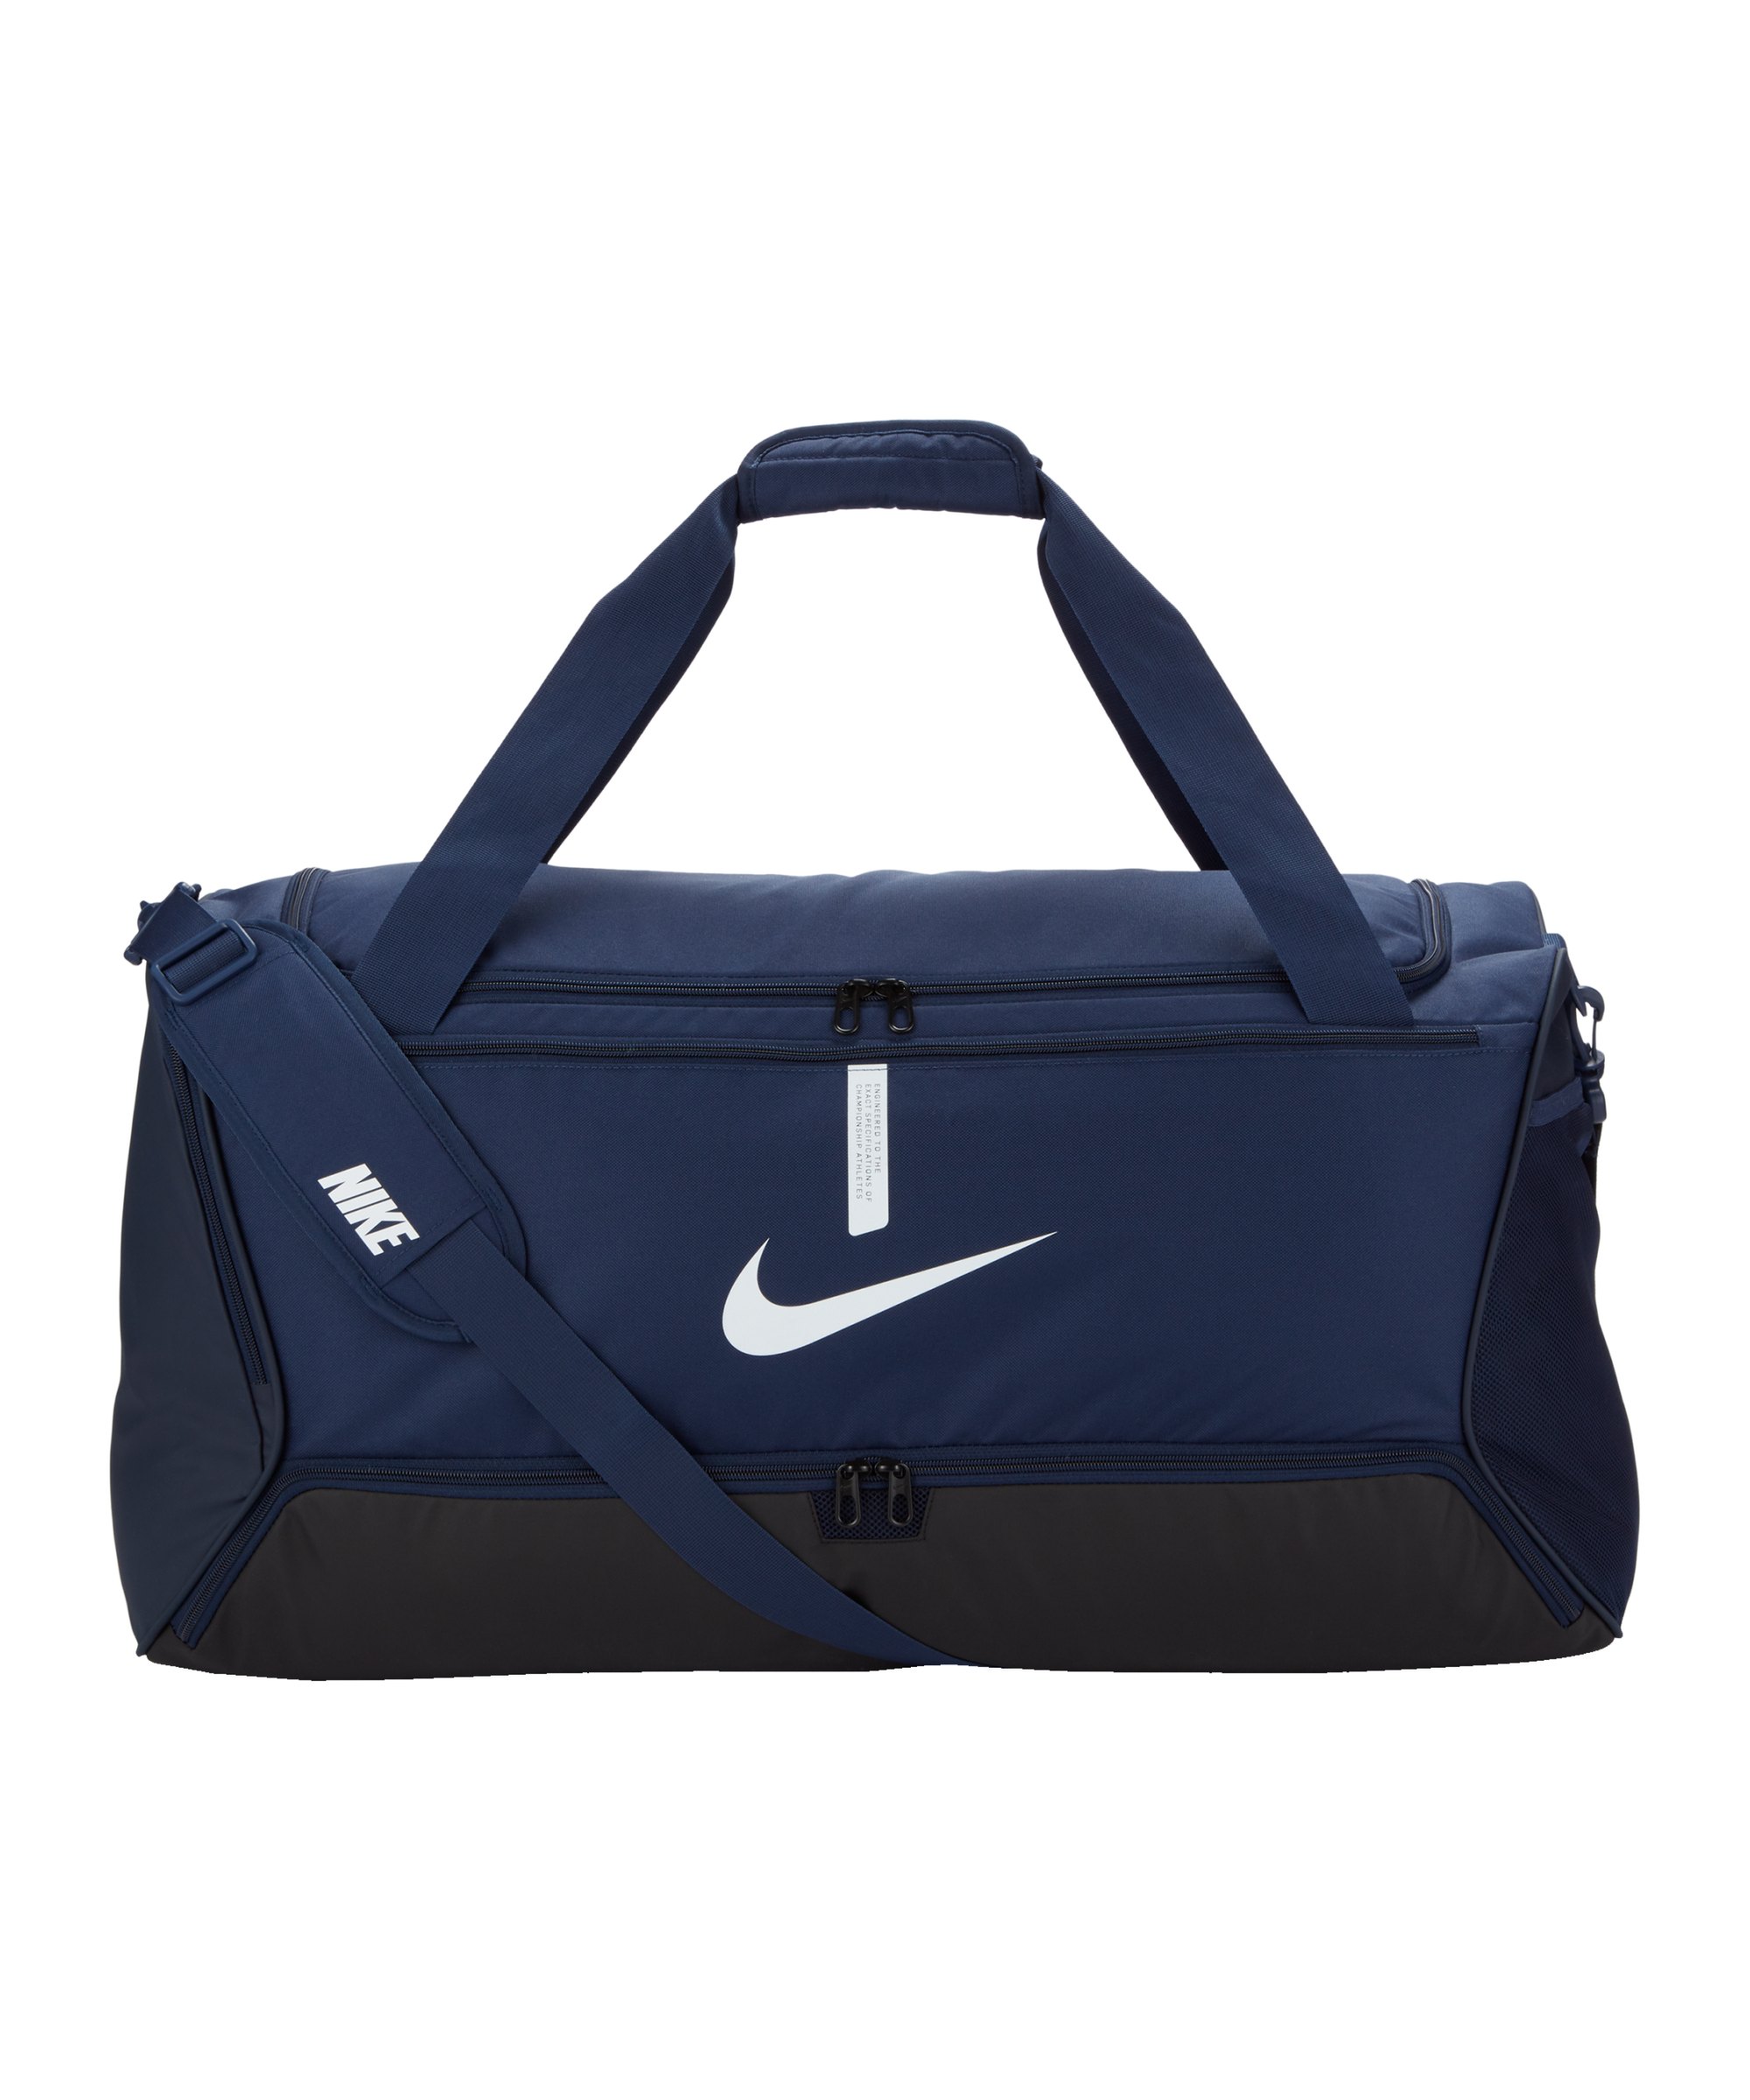 Nike Academy Team Duffel Tasche Large Blau F410 - blau